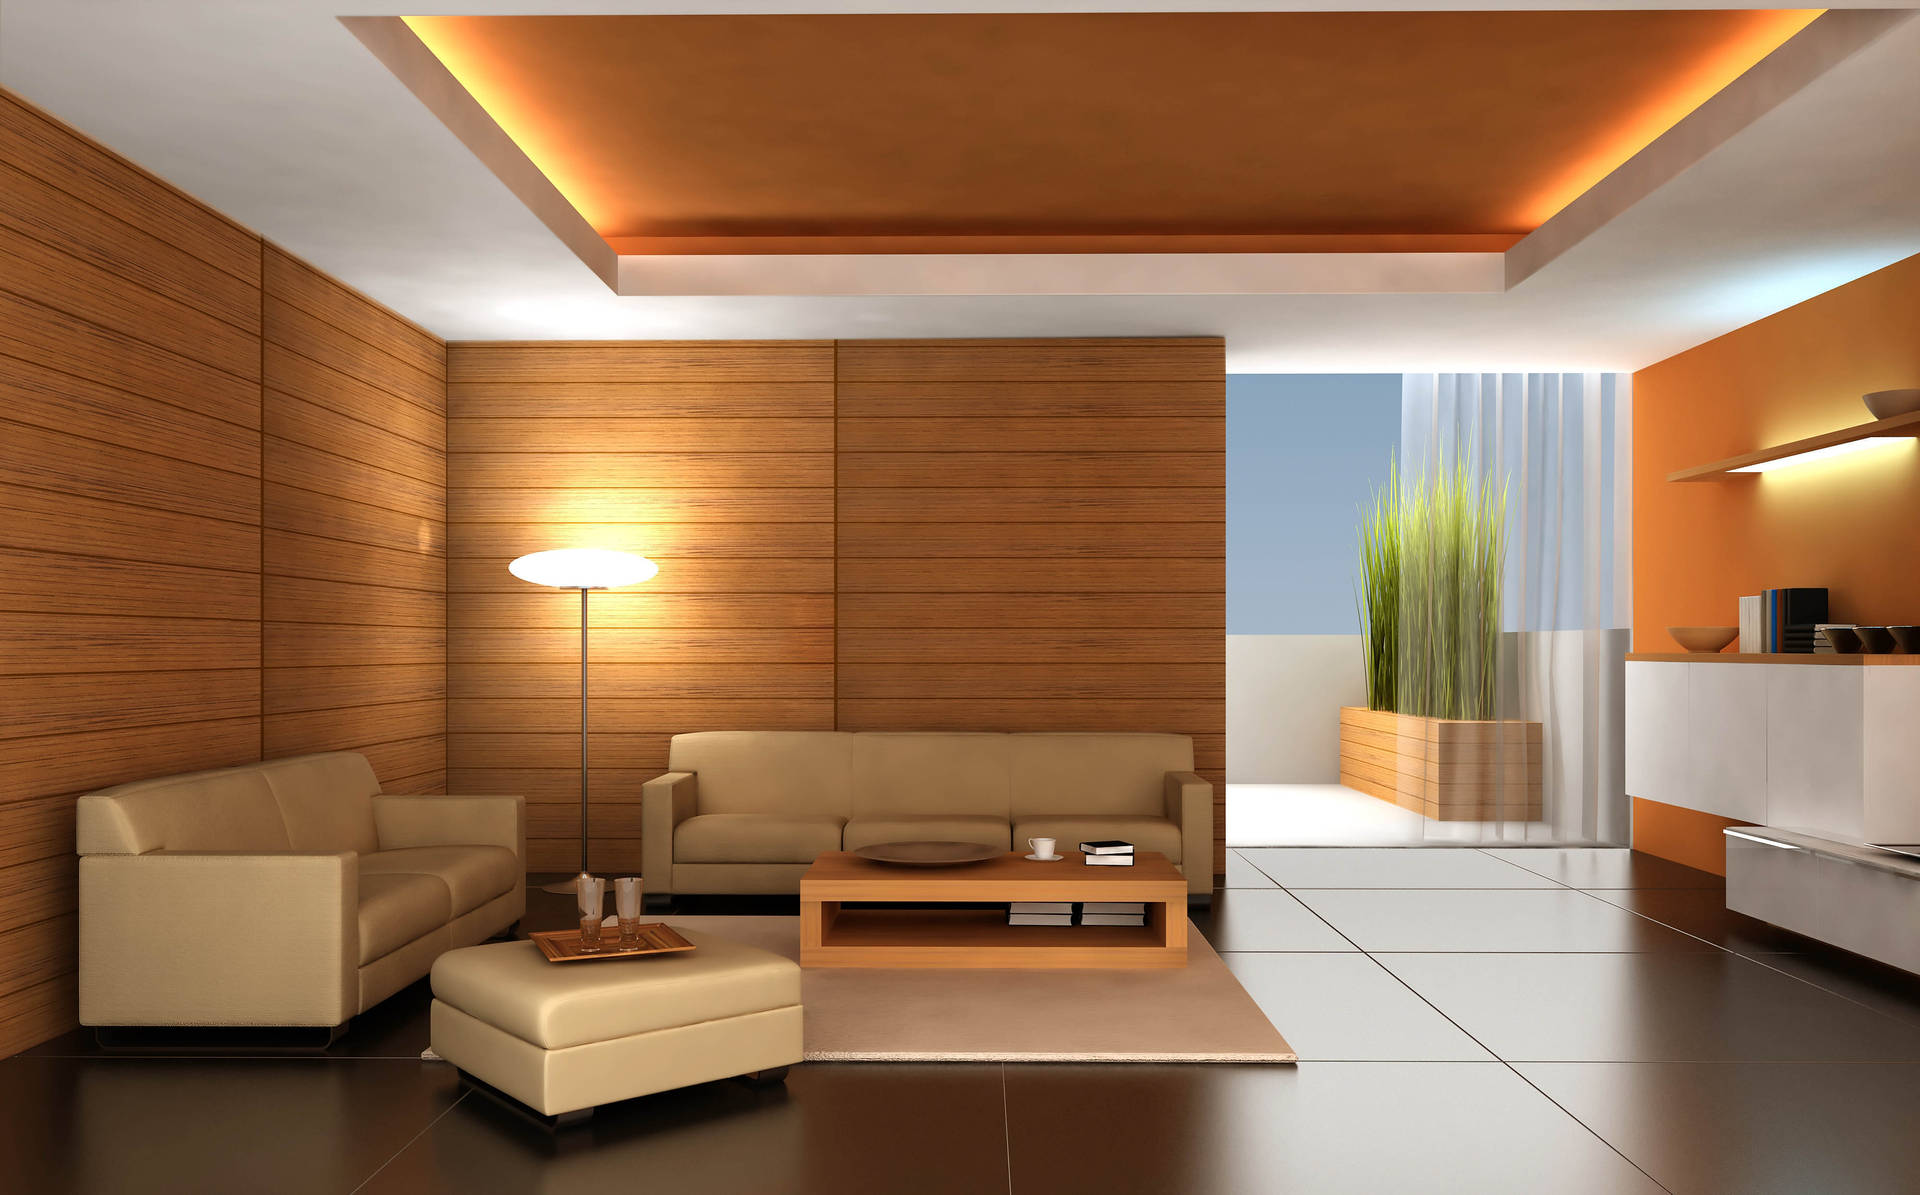 Modern Interior Wooden House Design Background